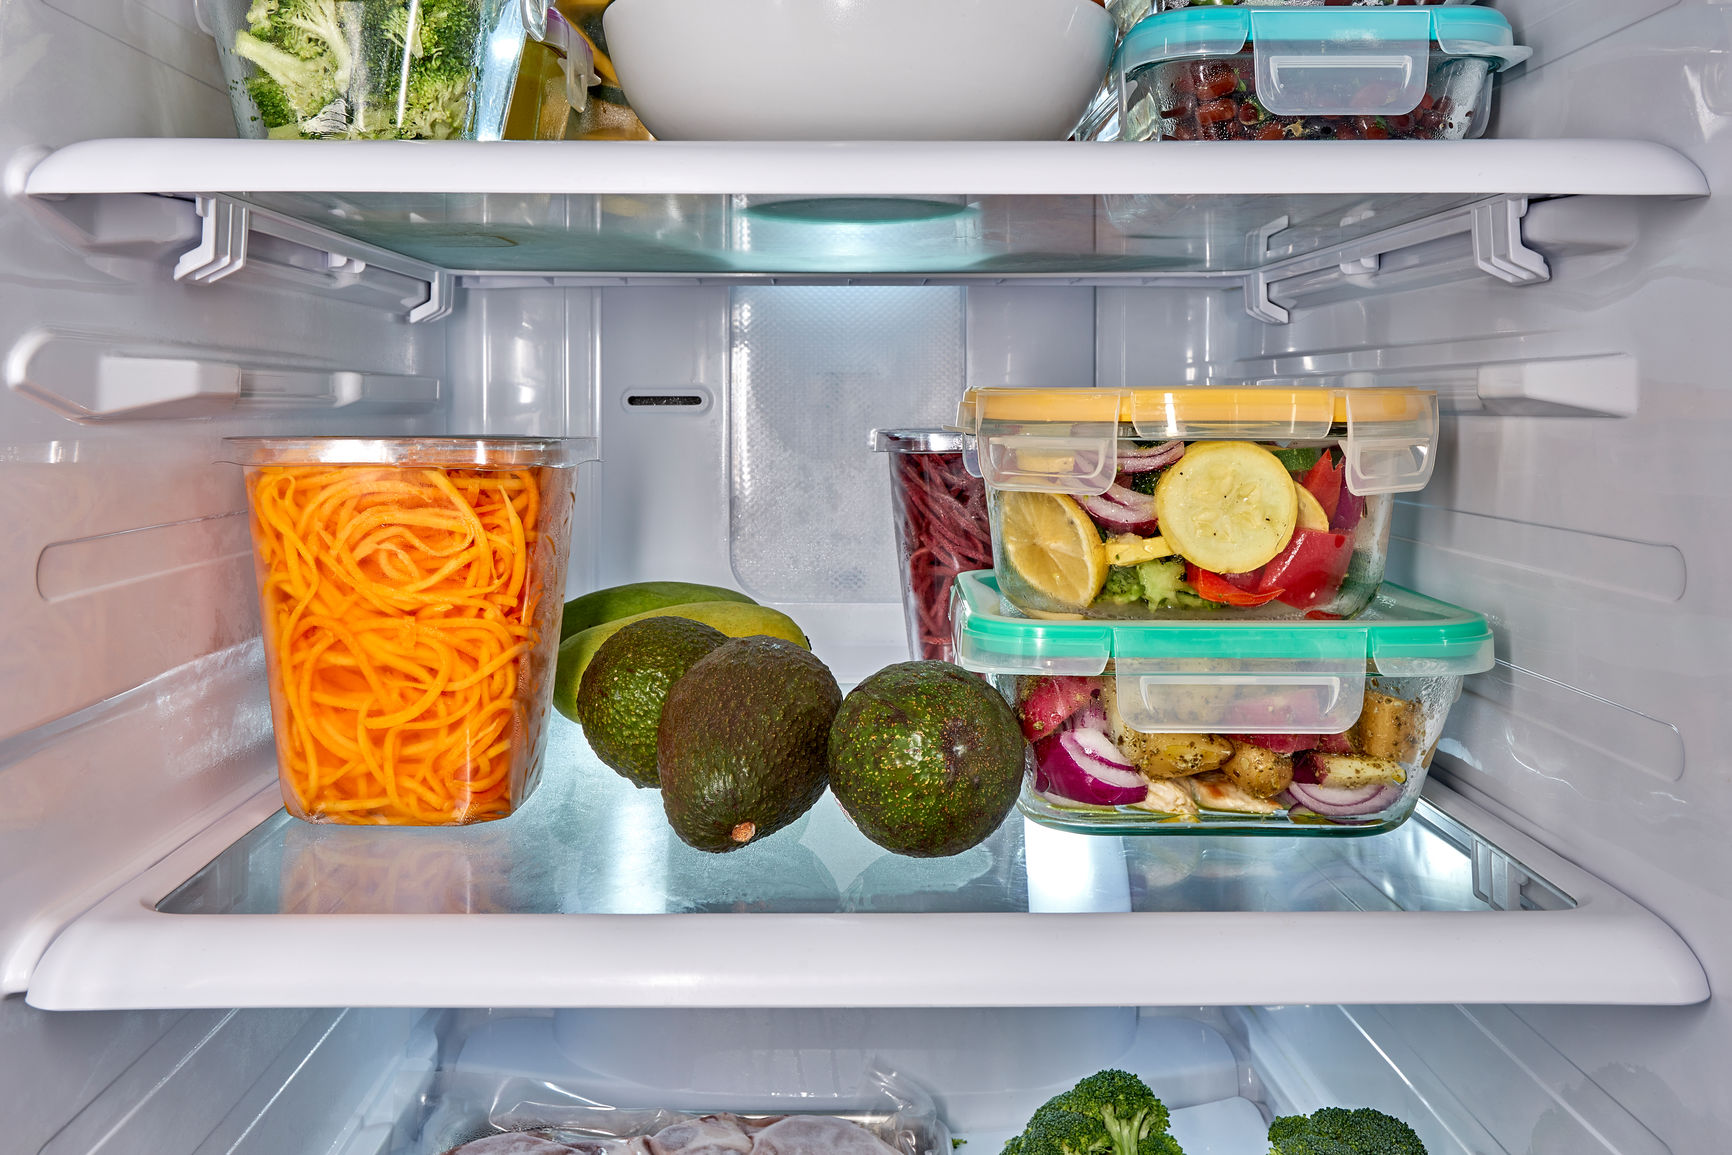 Phân loại đồ ăn và thực phẩm trong tủ để bảo quản đồ được an toàn hơn